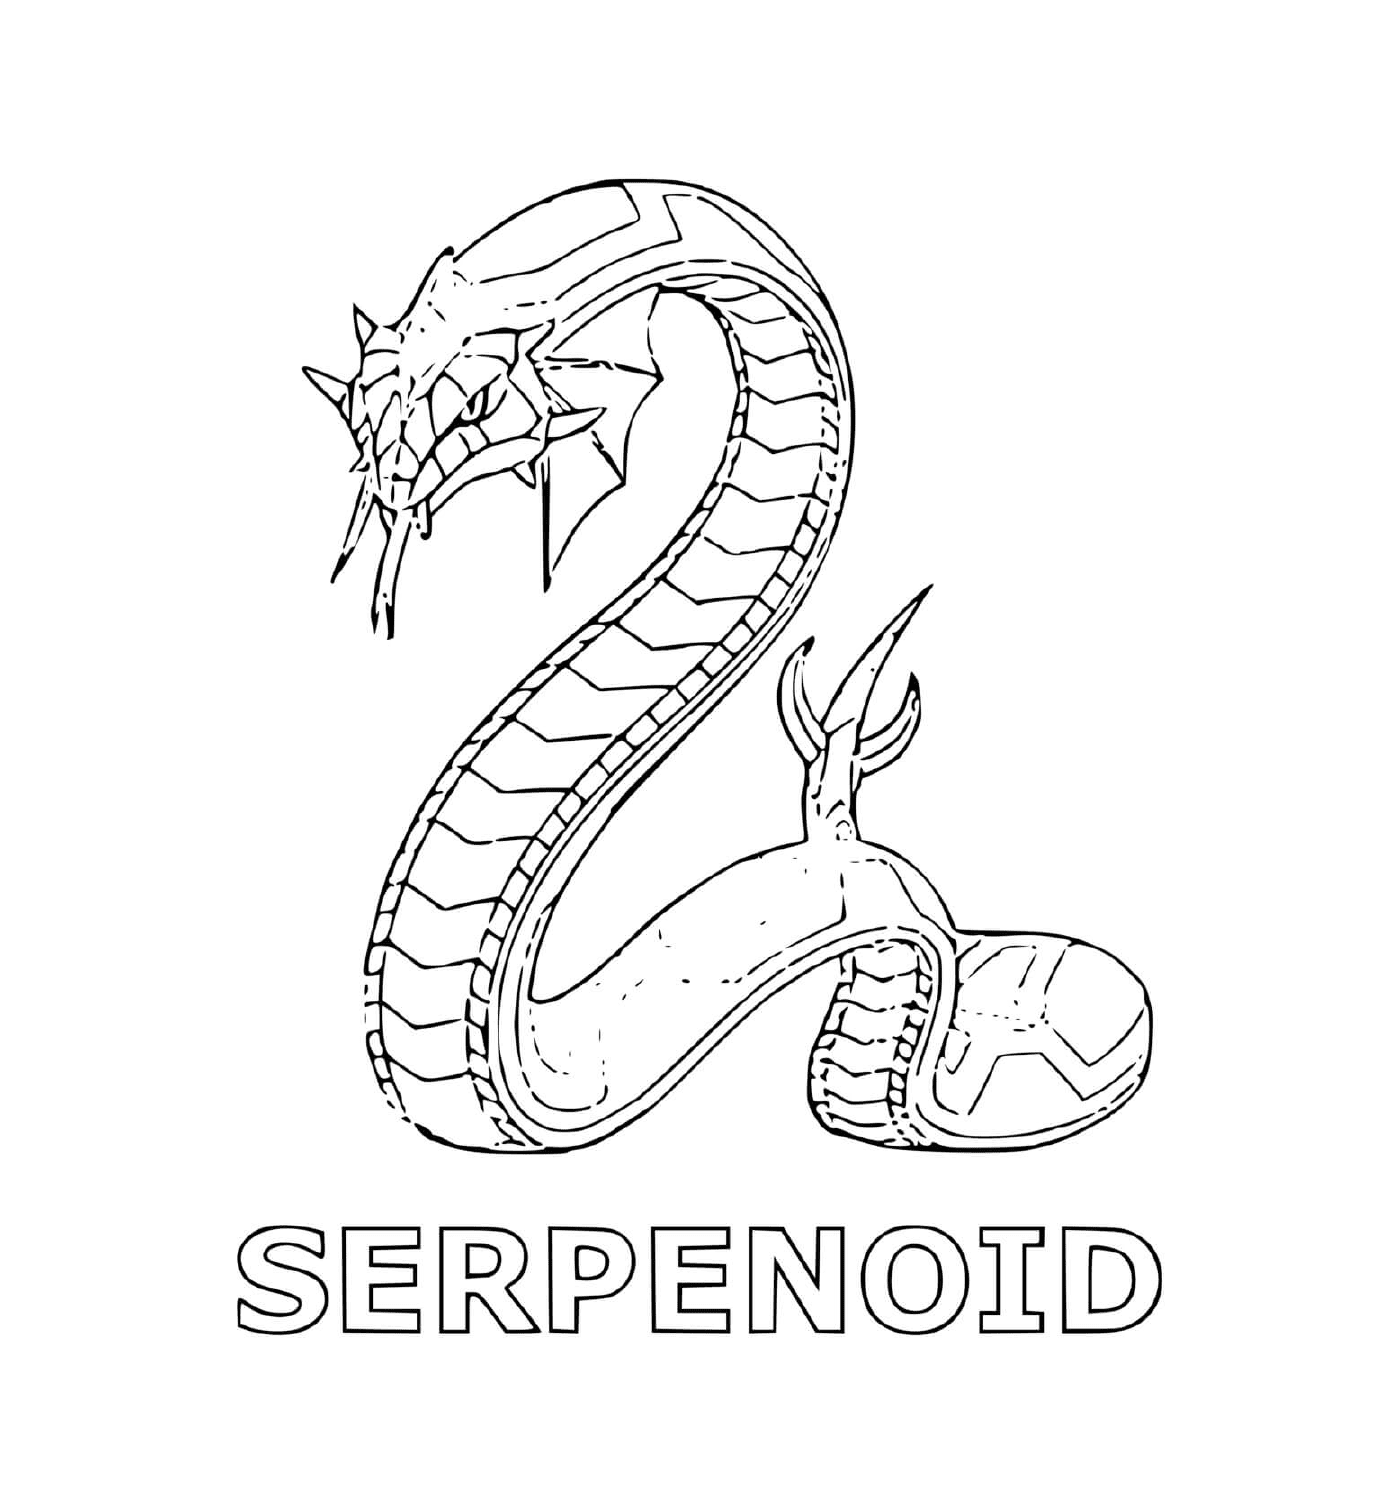   un serpent avec le mot serpenoid en dessous 